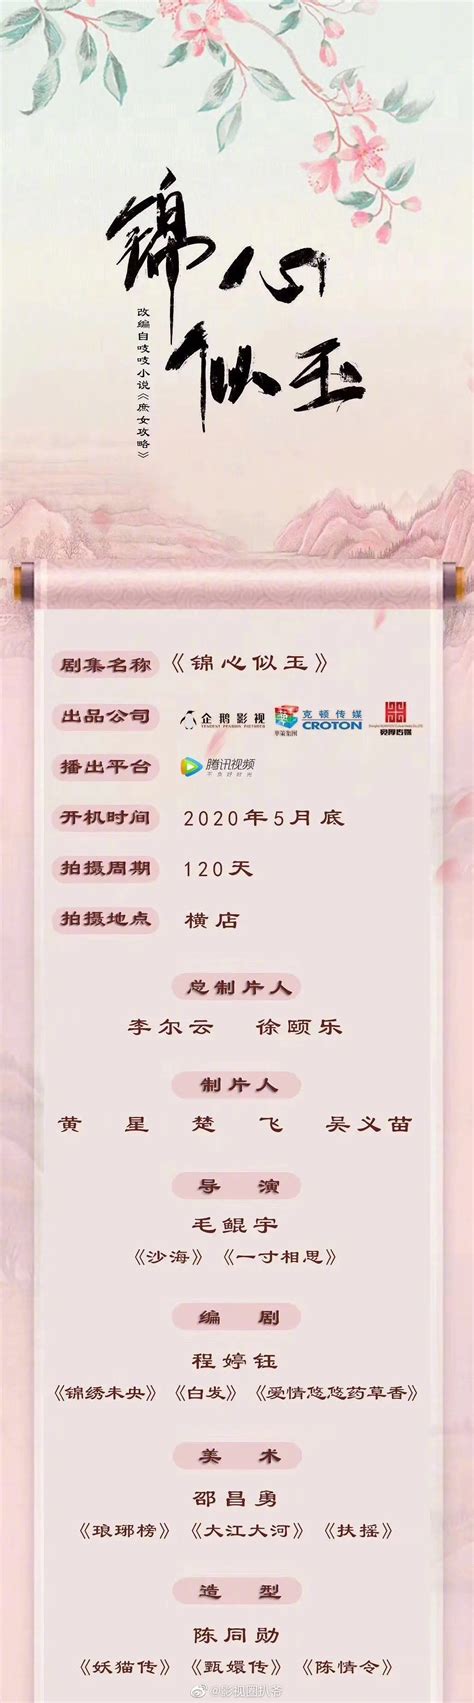 小说前一百名排行榜_2017年经典完结小说排行榜前10名_中国排行网